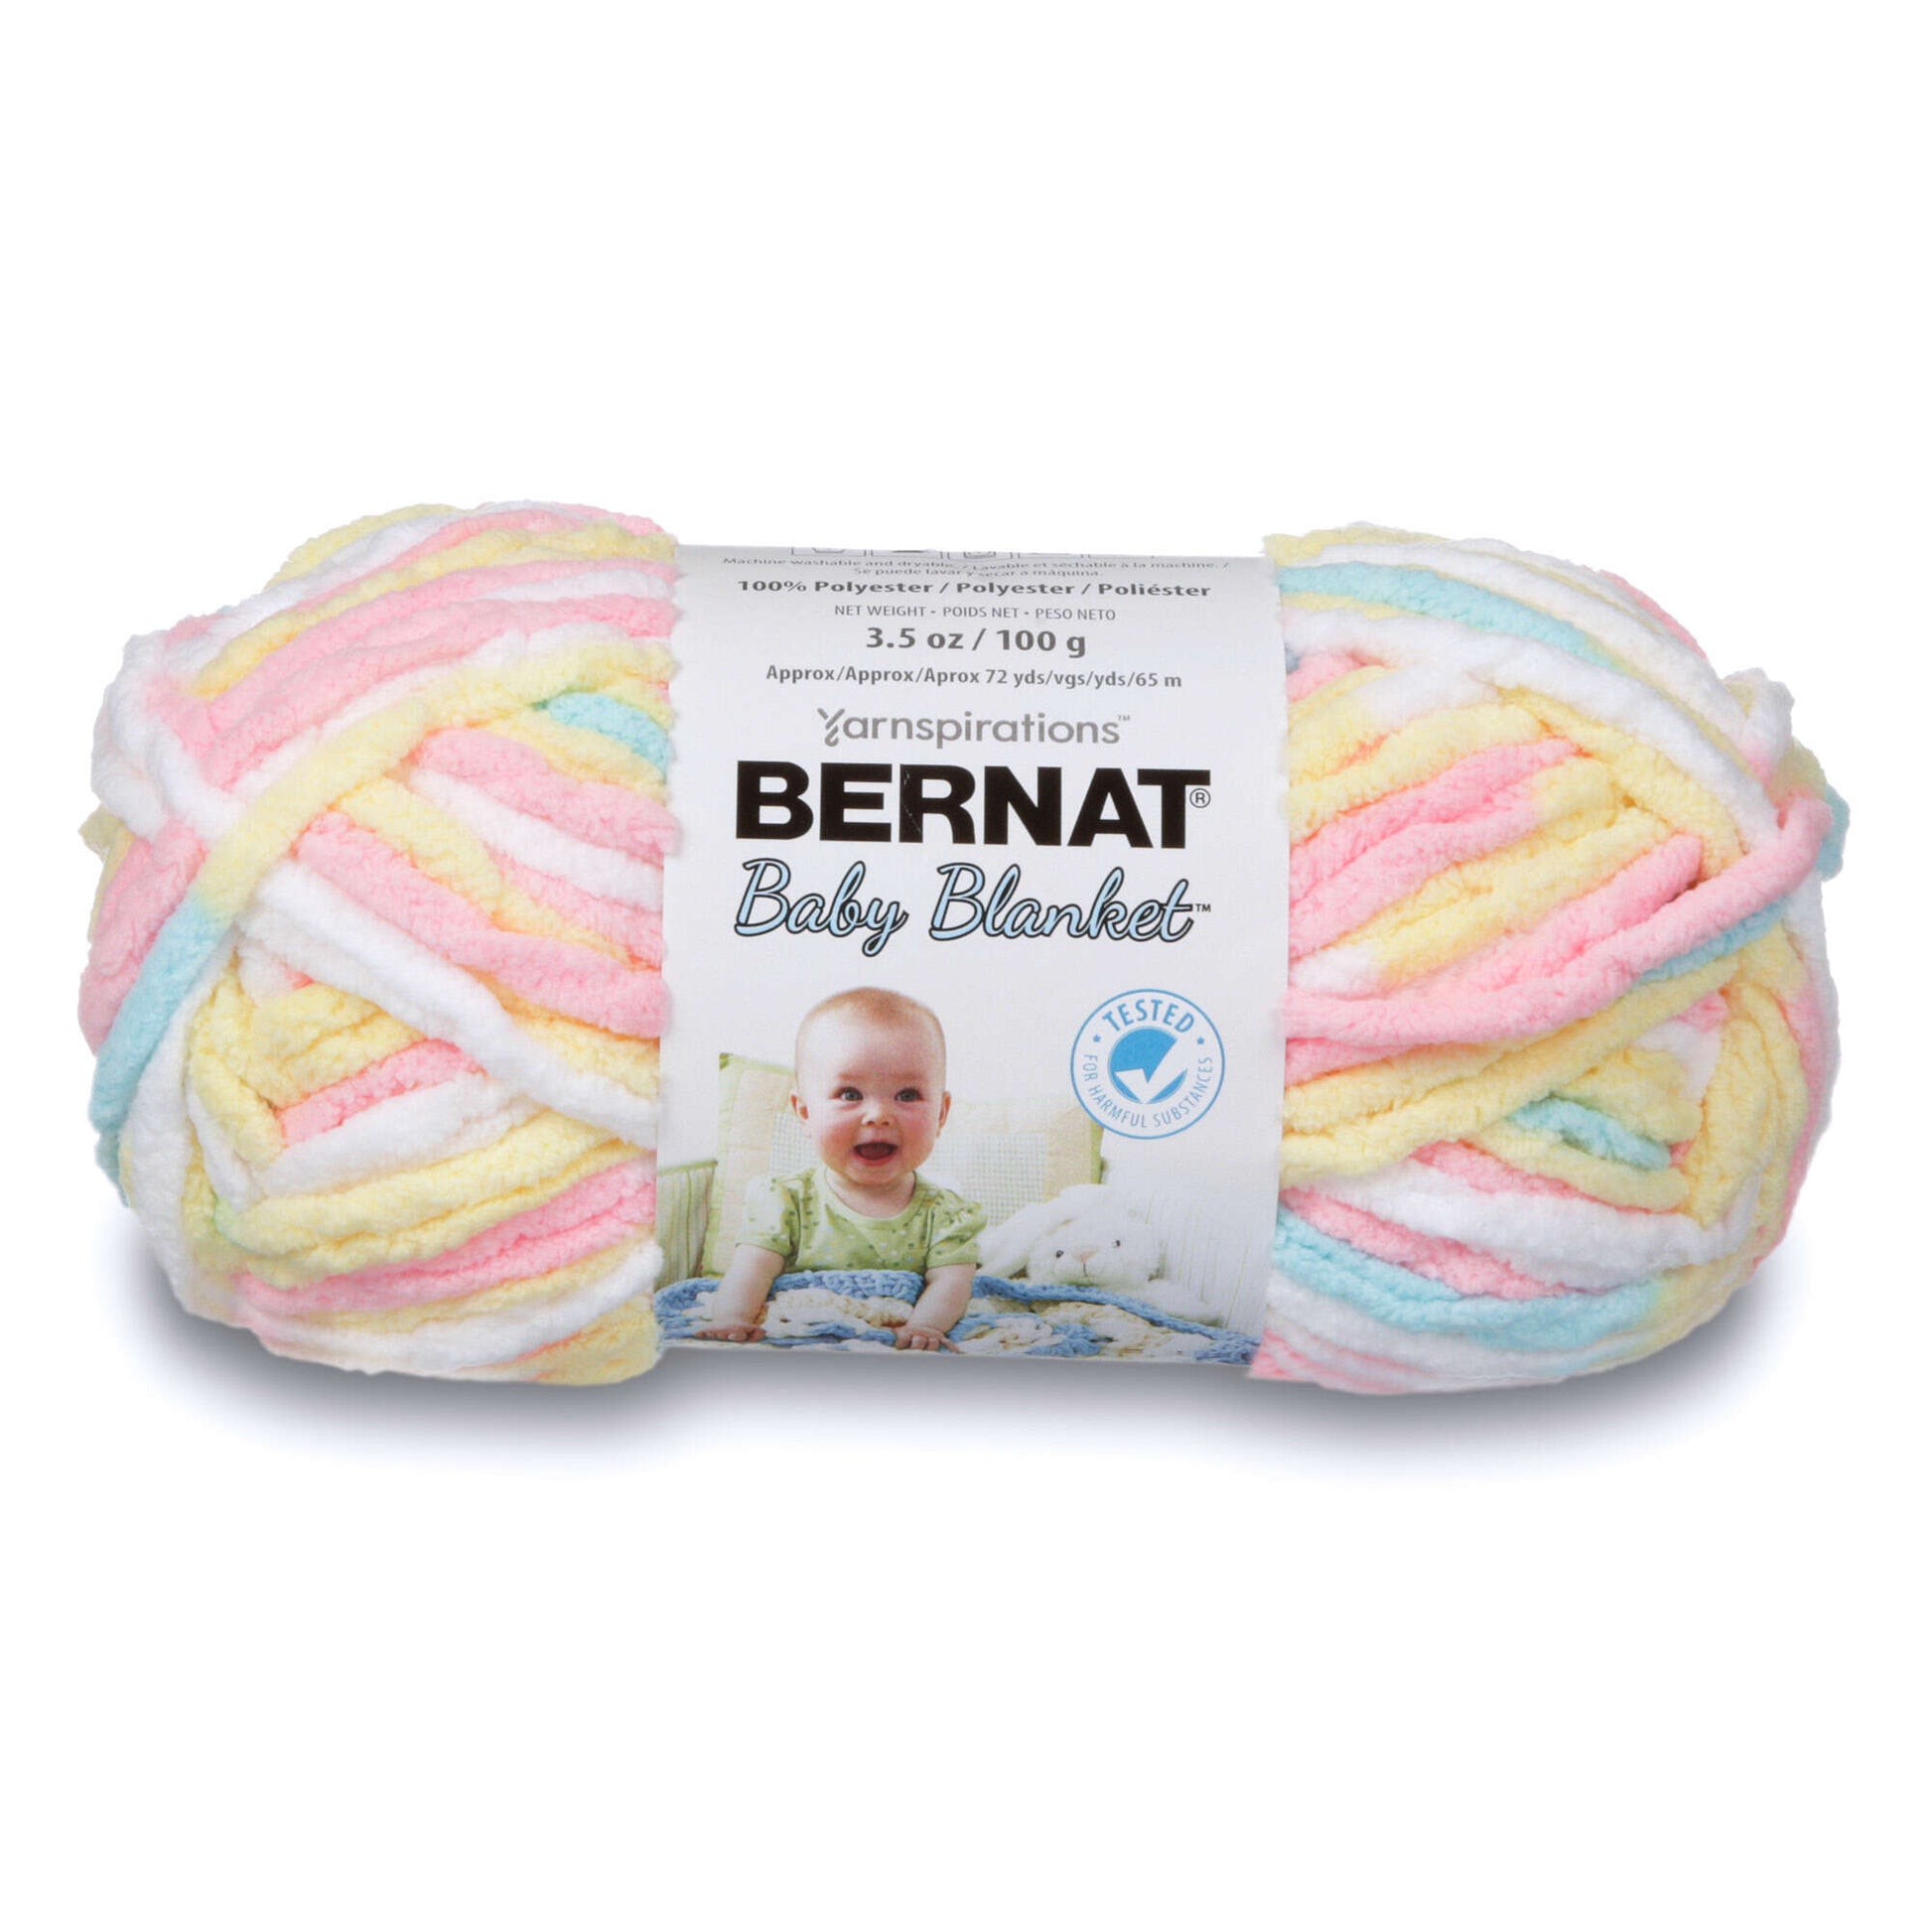 Bernat Baby Blanket Yarn 6-pack - Little Denim Print - 9001044